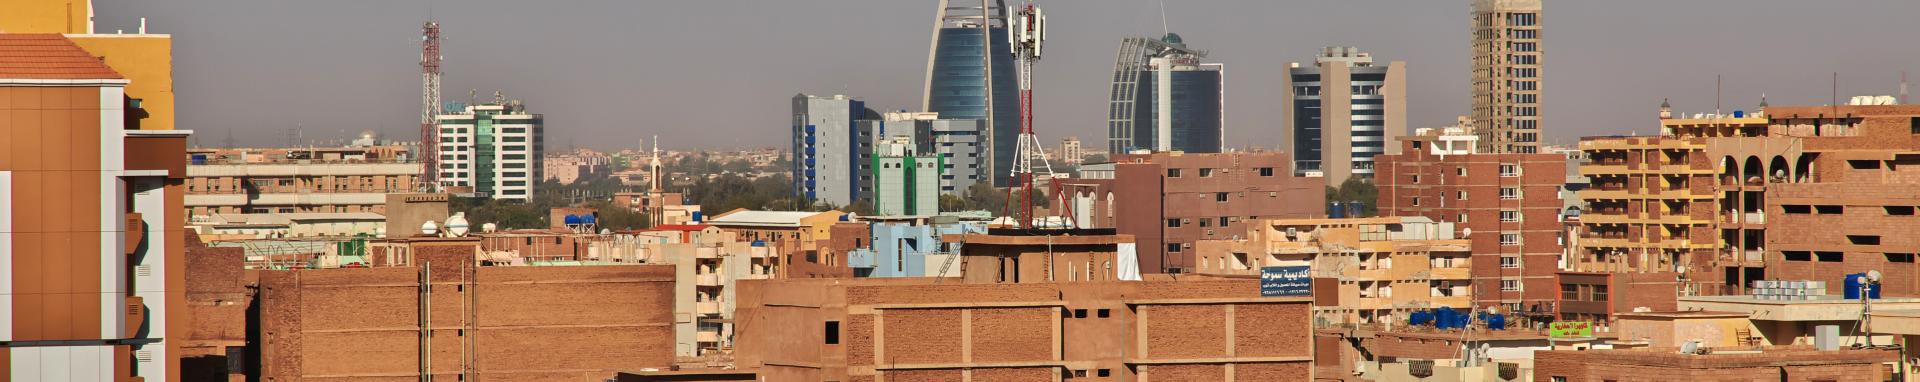 A city in Sudan